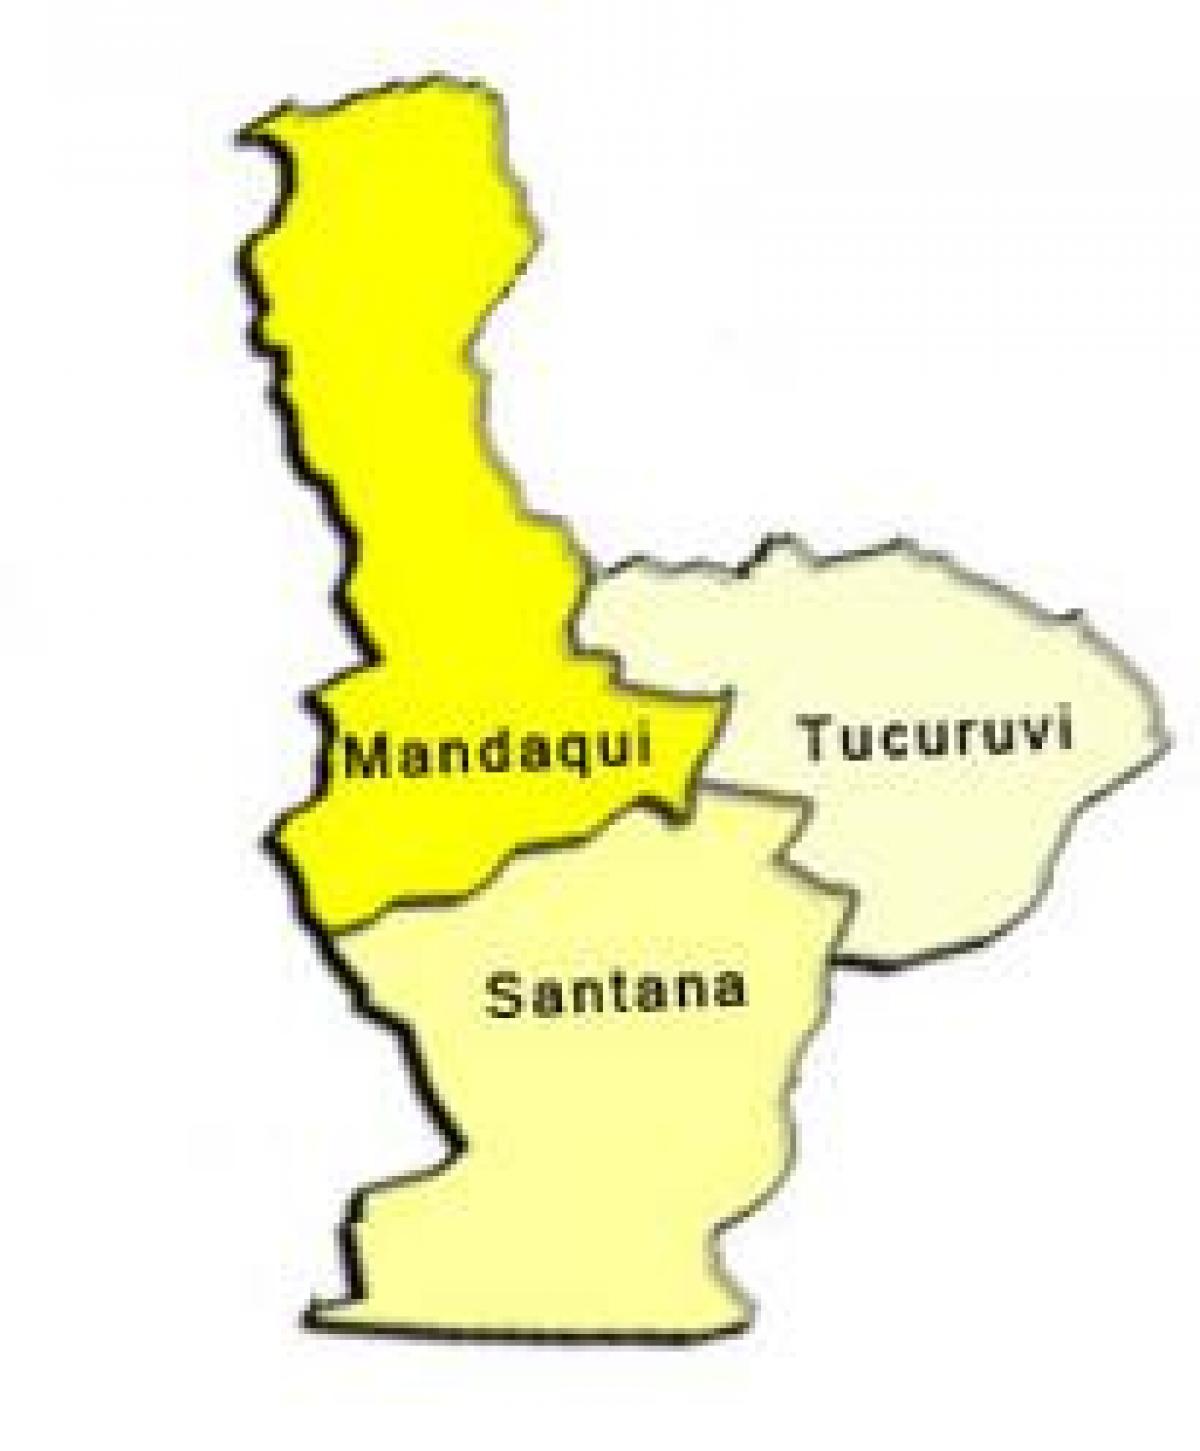 แผนที่ของซานทาน่ารายการย่อยขอ prefecture